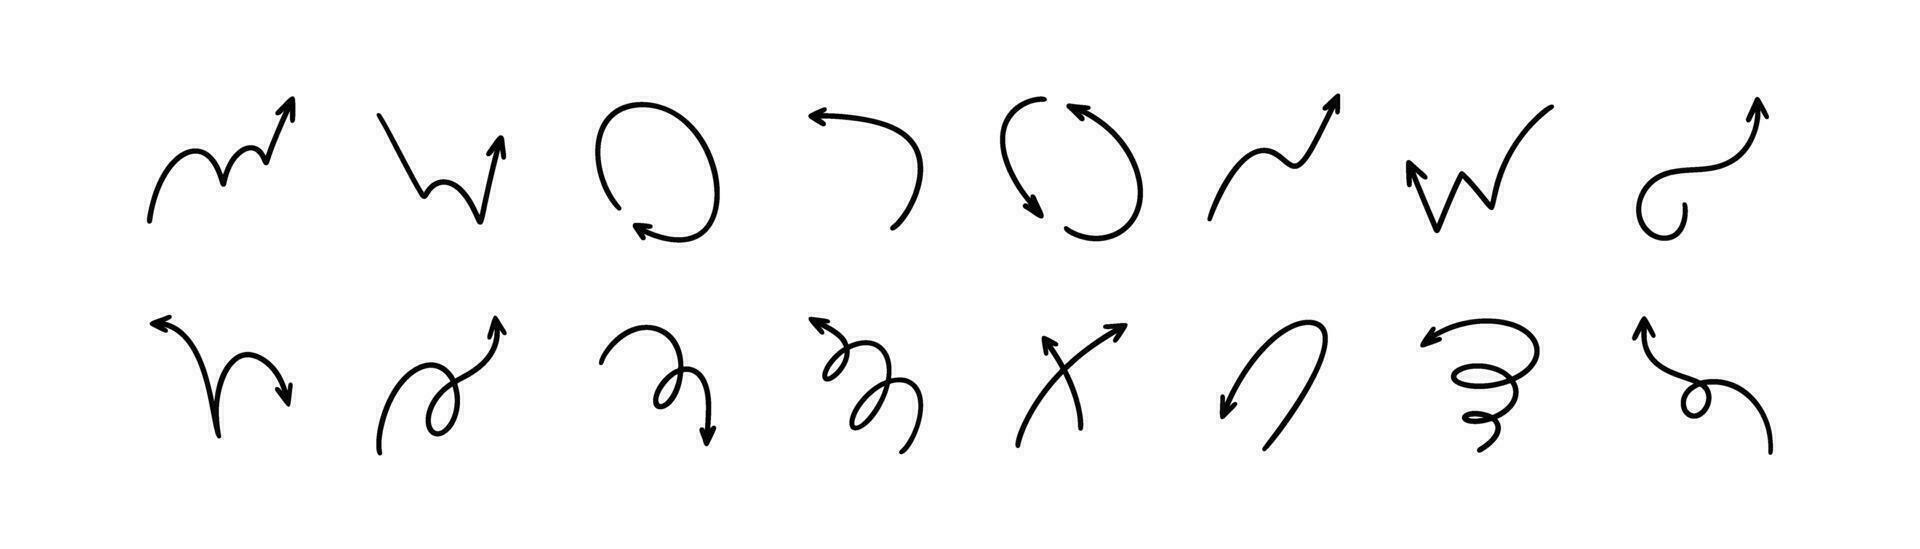 Hand gezeichnet Vektor Pfeil Symbol Satz. Gekritzel skizzieren Stift, Bleistift, Wachsmalstift Zeichnung. Sache Linie Design Elemente. hoch, runter, Rechts, links, Kreis, prallen, Spiral- Richtung und Bewegung Ausdruck